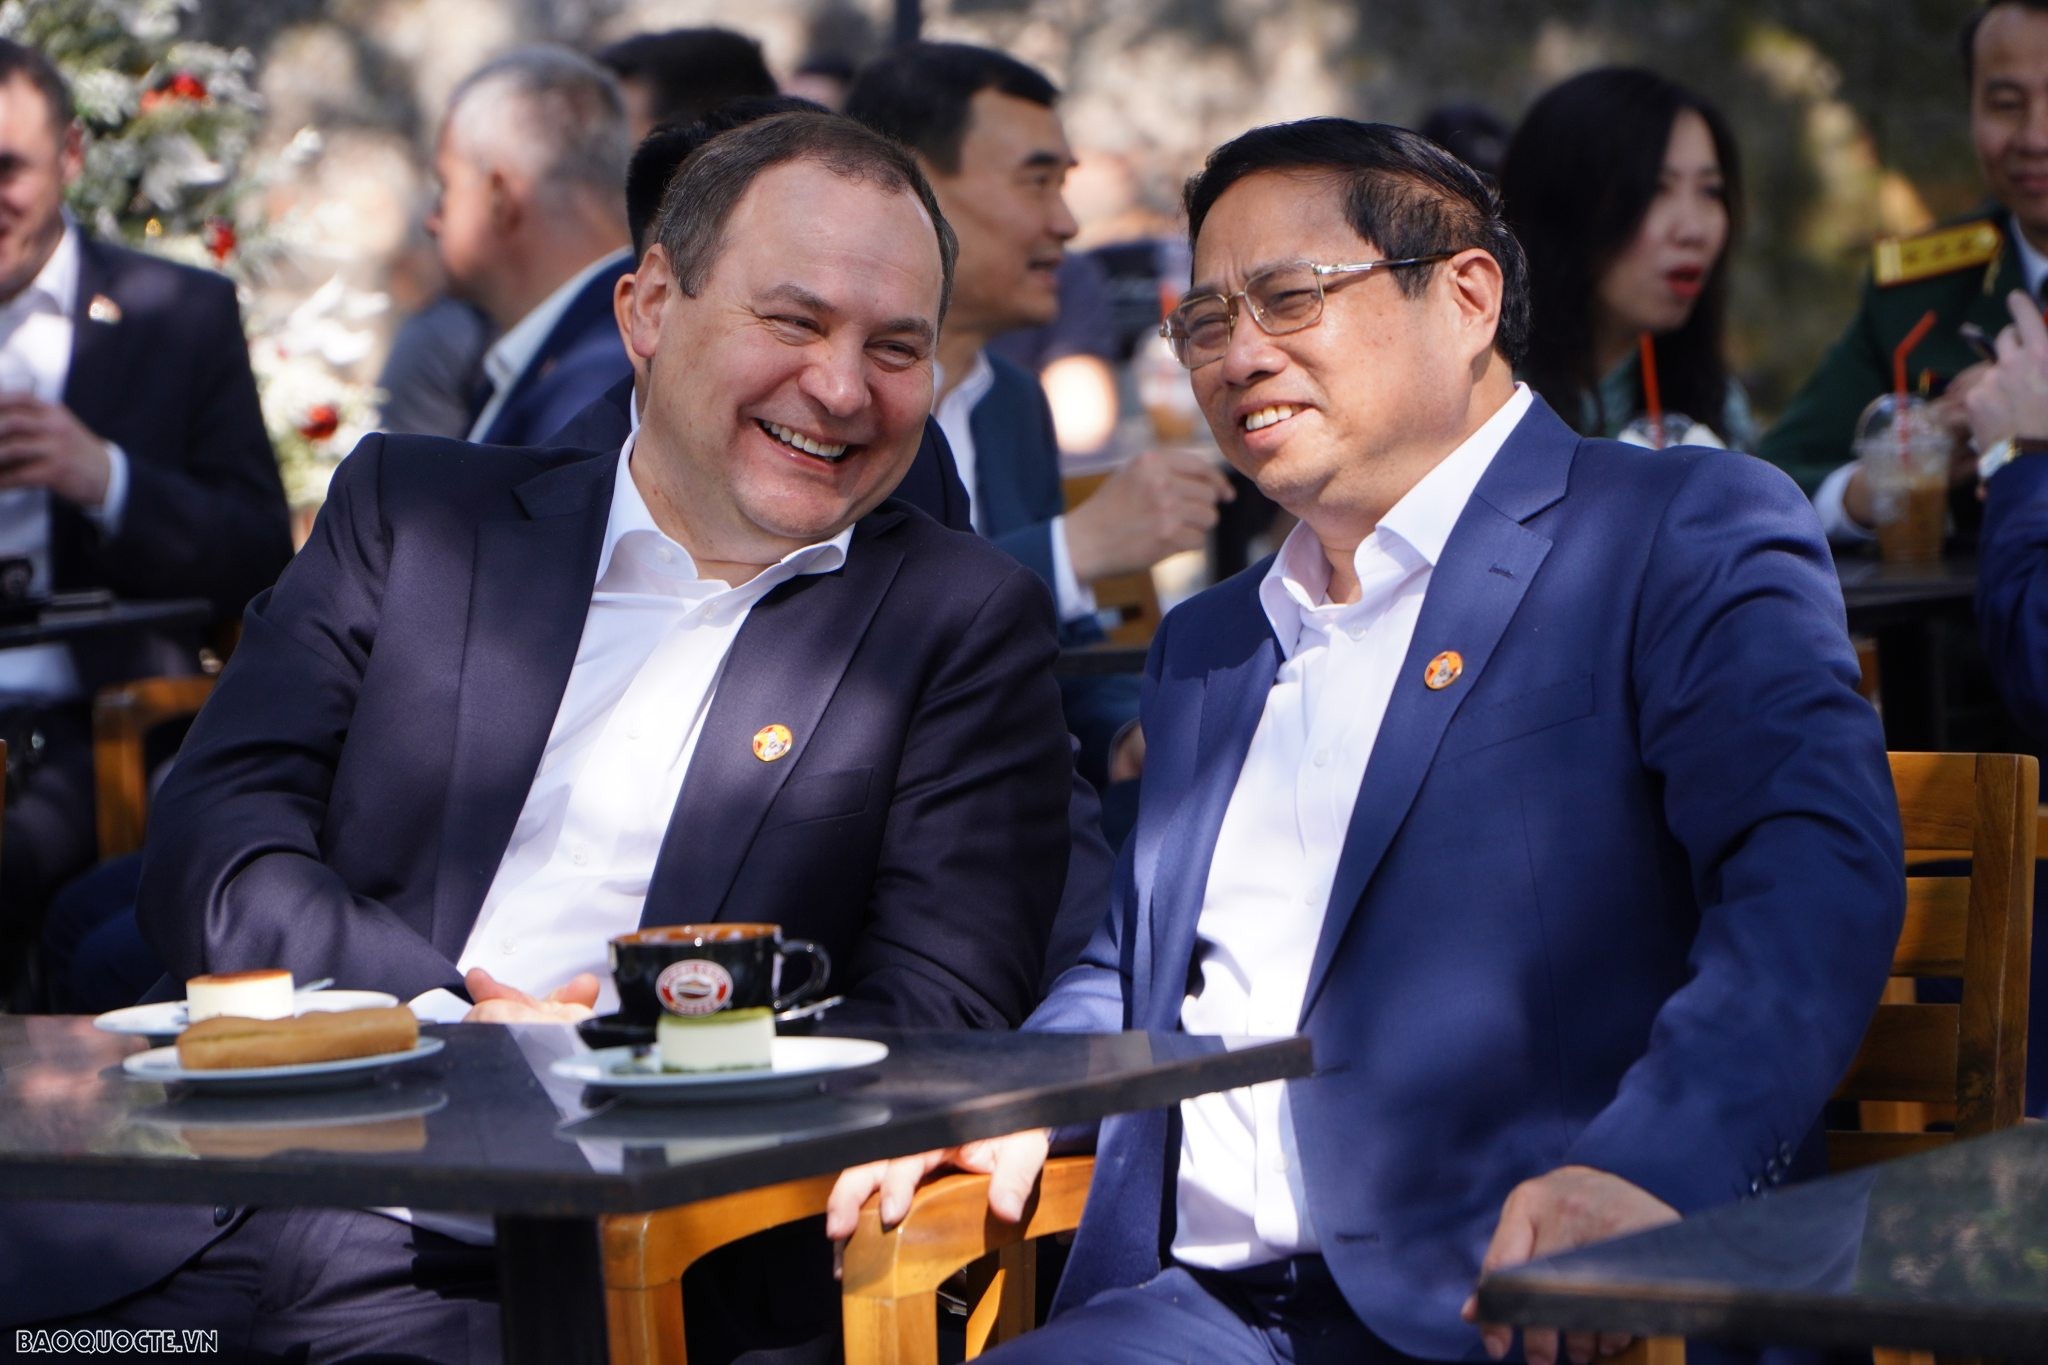 Thủ tướng Phạm Minh Chính và Thủ tướng Belarus thăm cột cờ Hà Nội và uống caphe